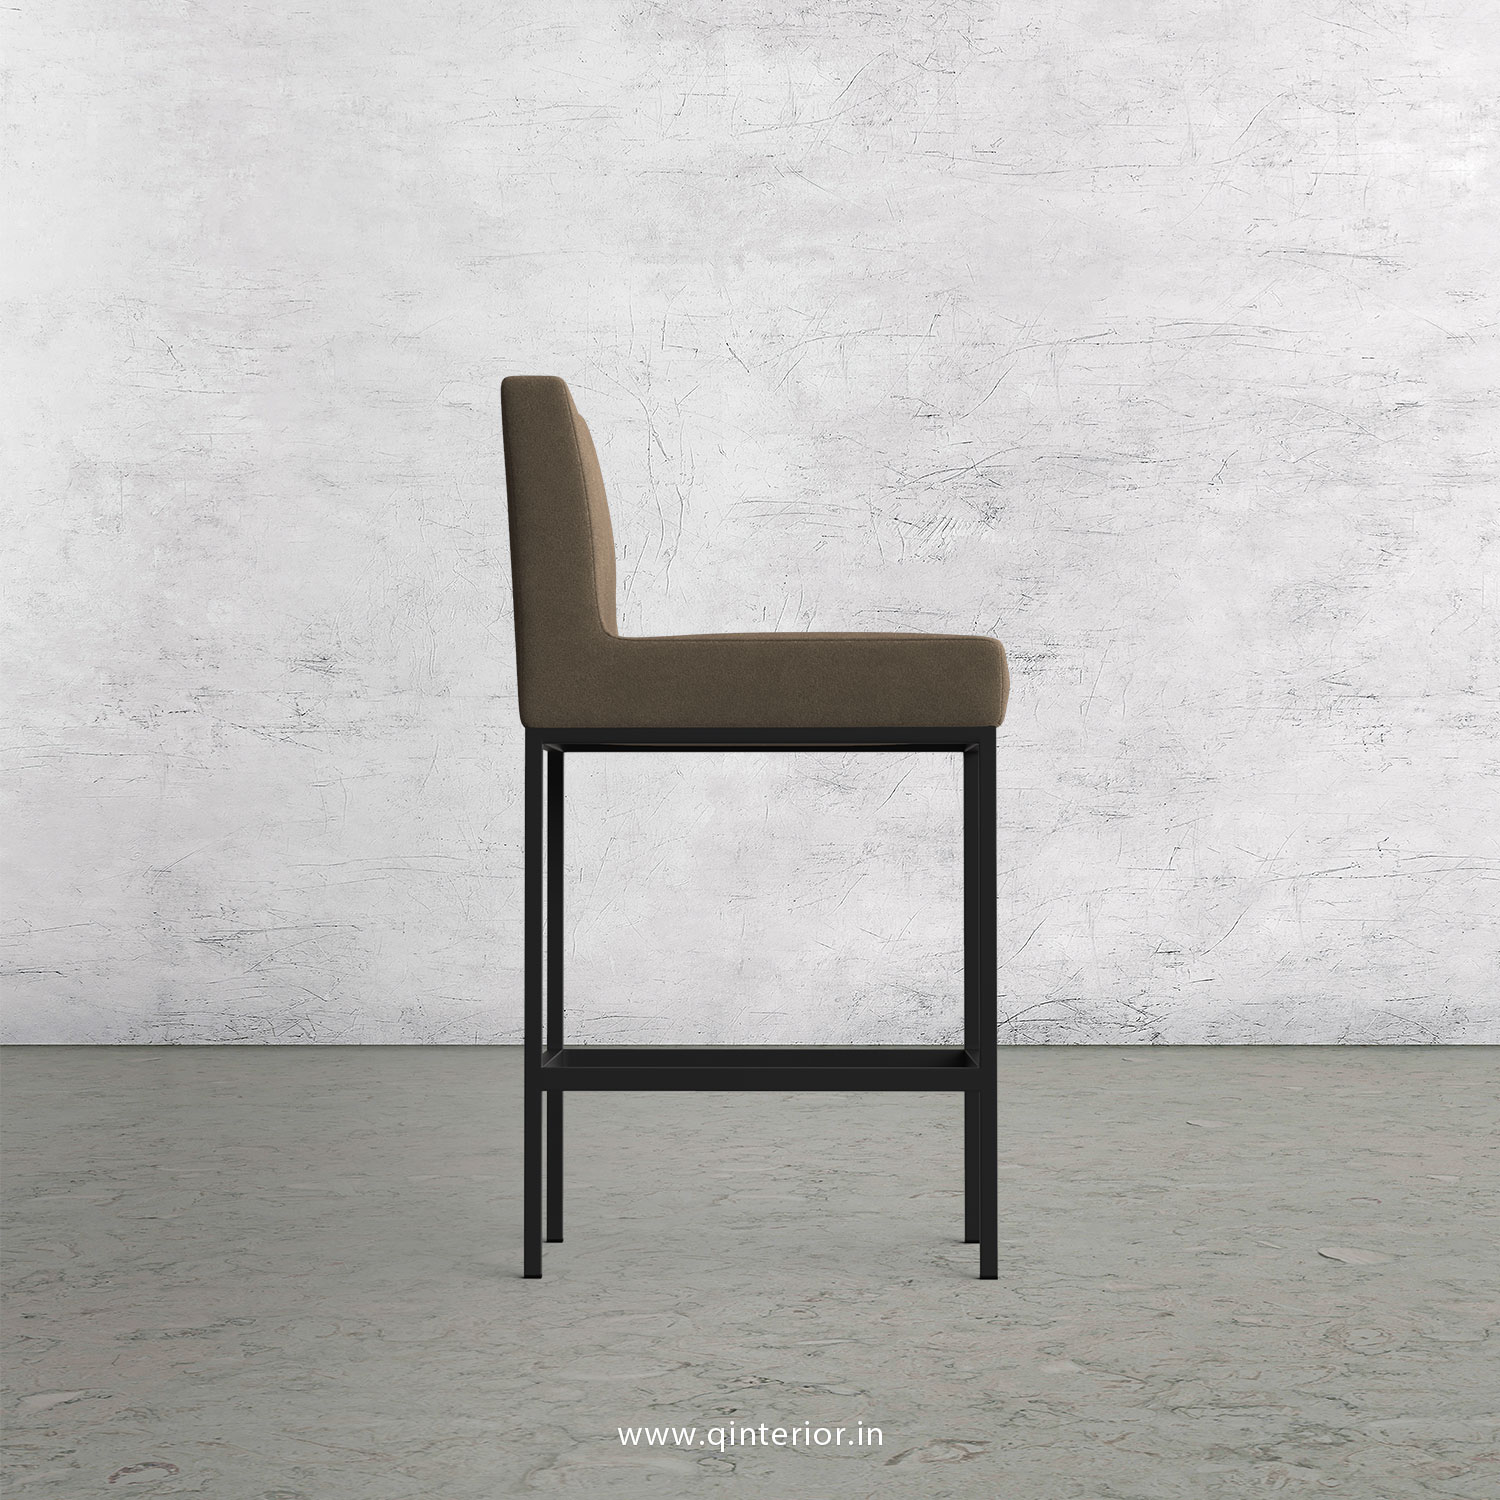 Bar Chair in Velvet Fabric - BCH001 VL11